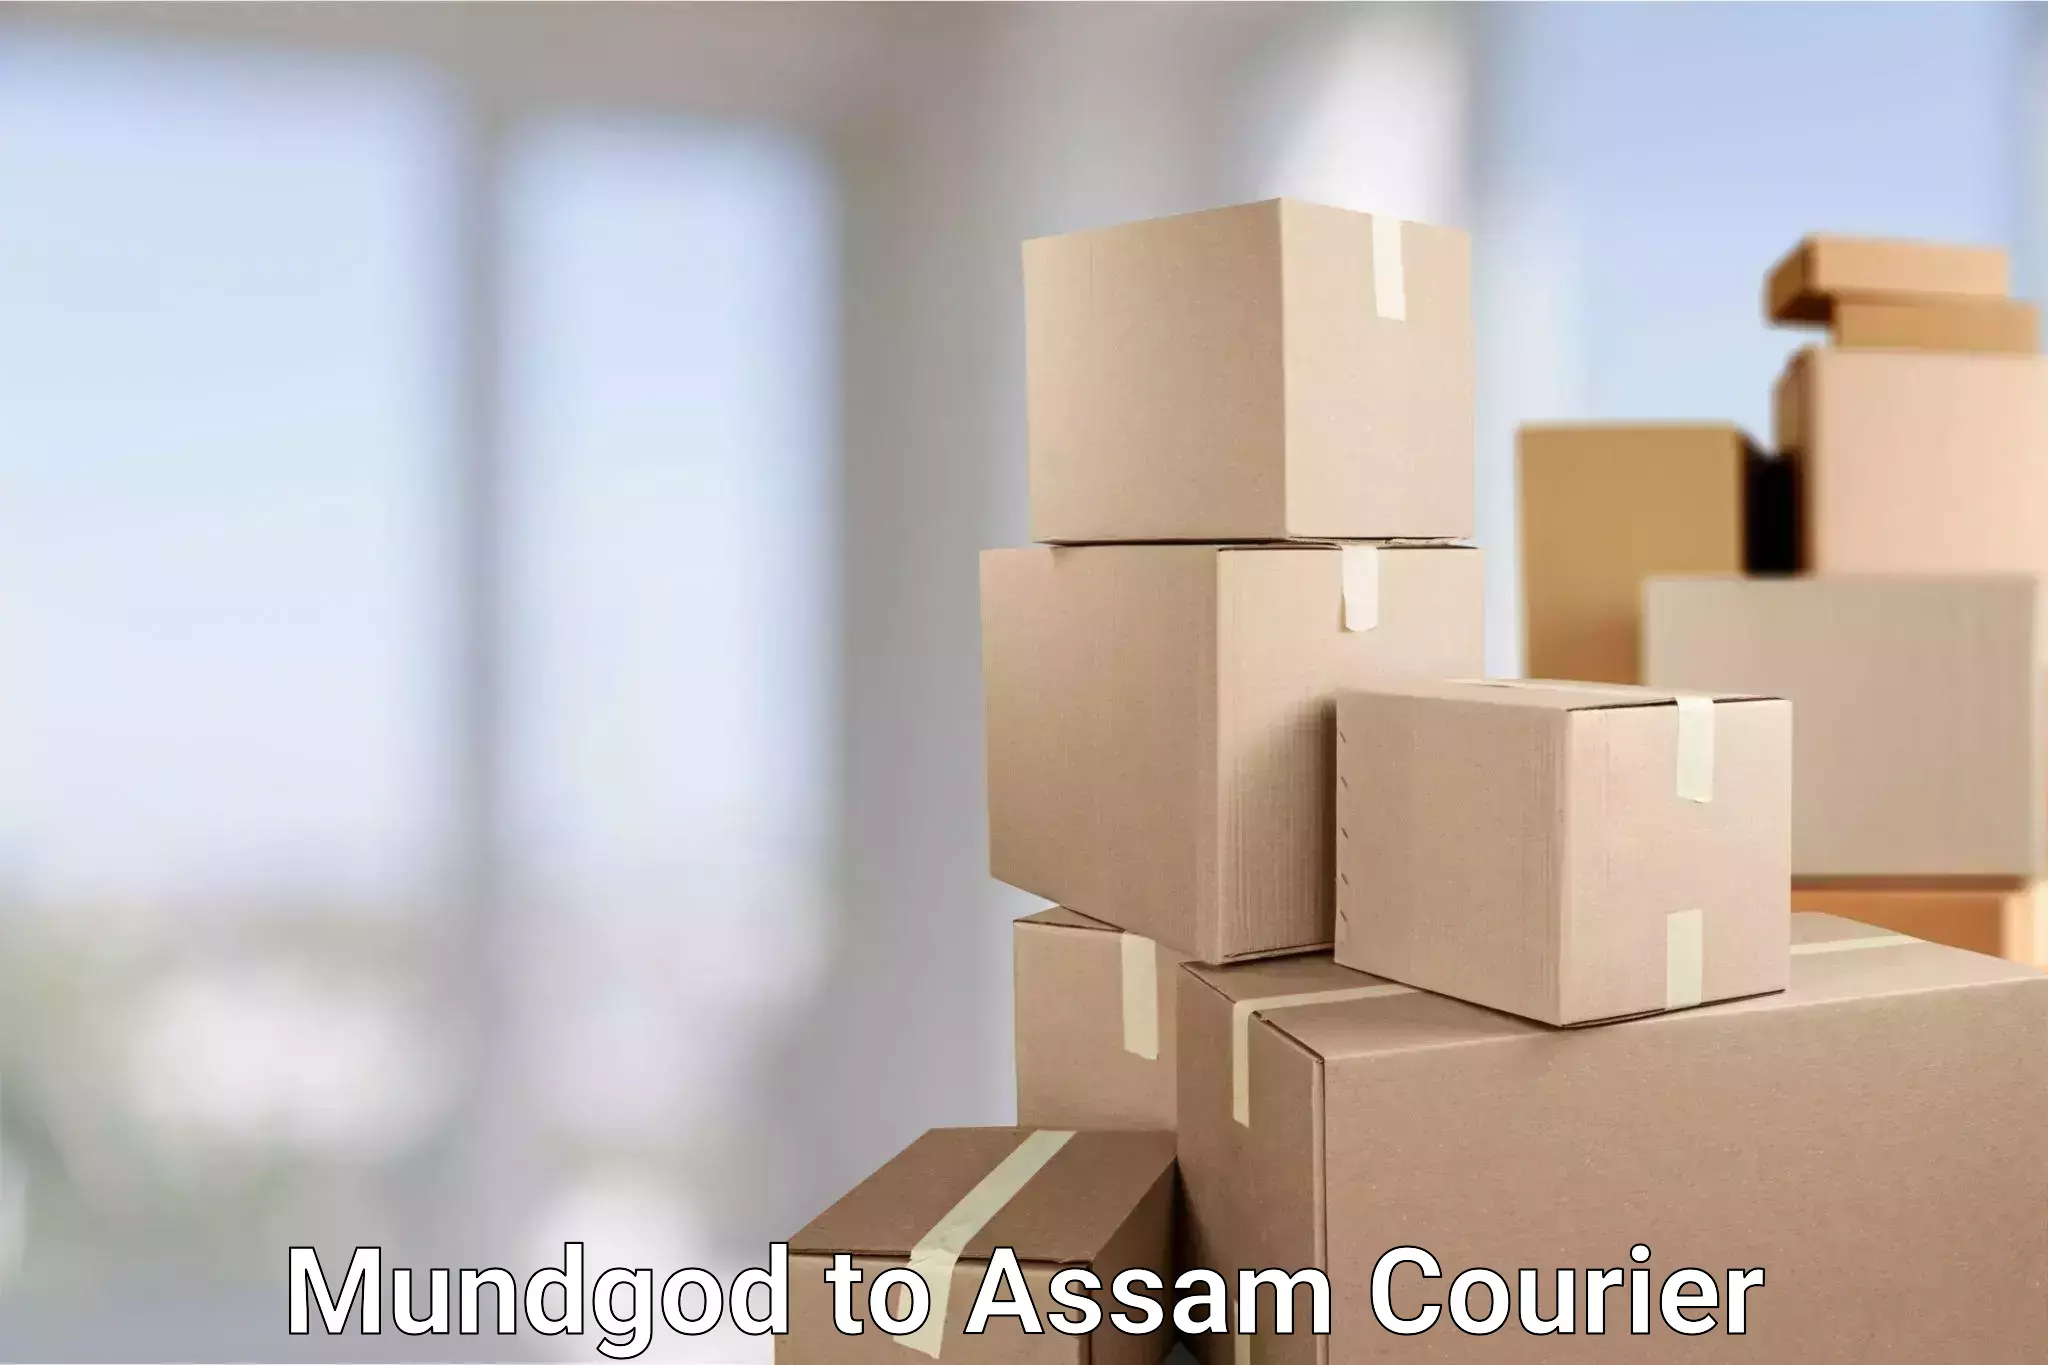 24-hour courier services Mundgod to Amoni